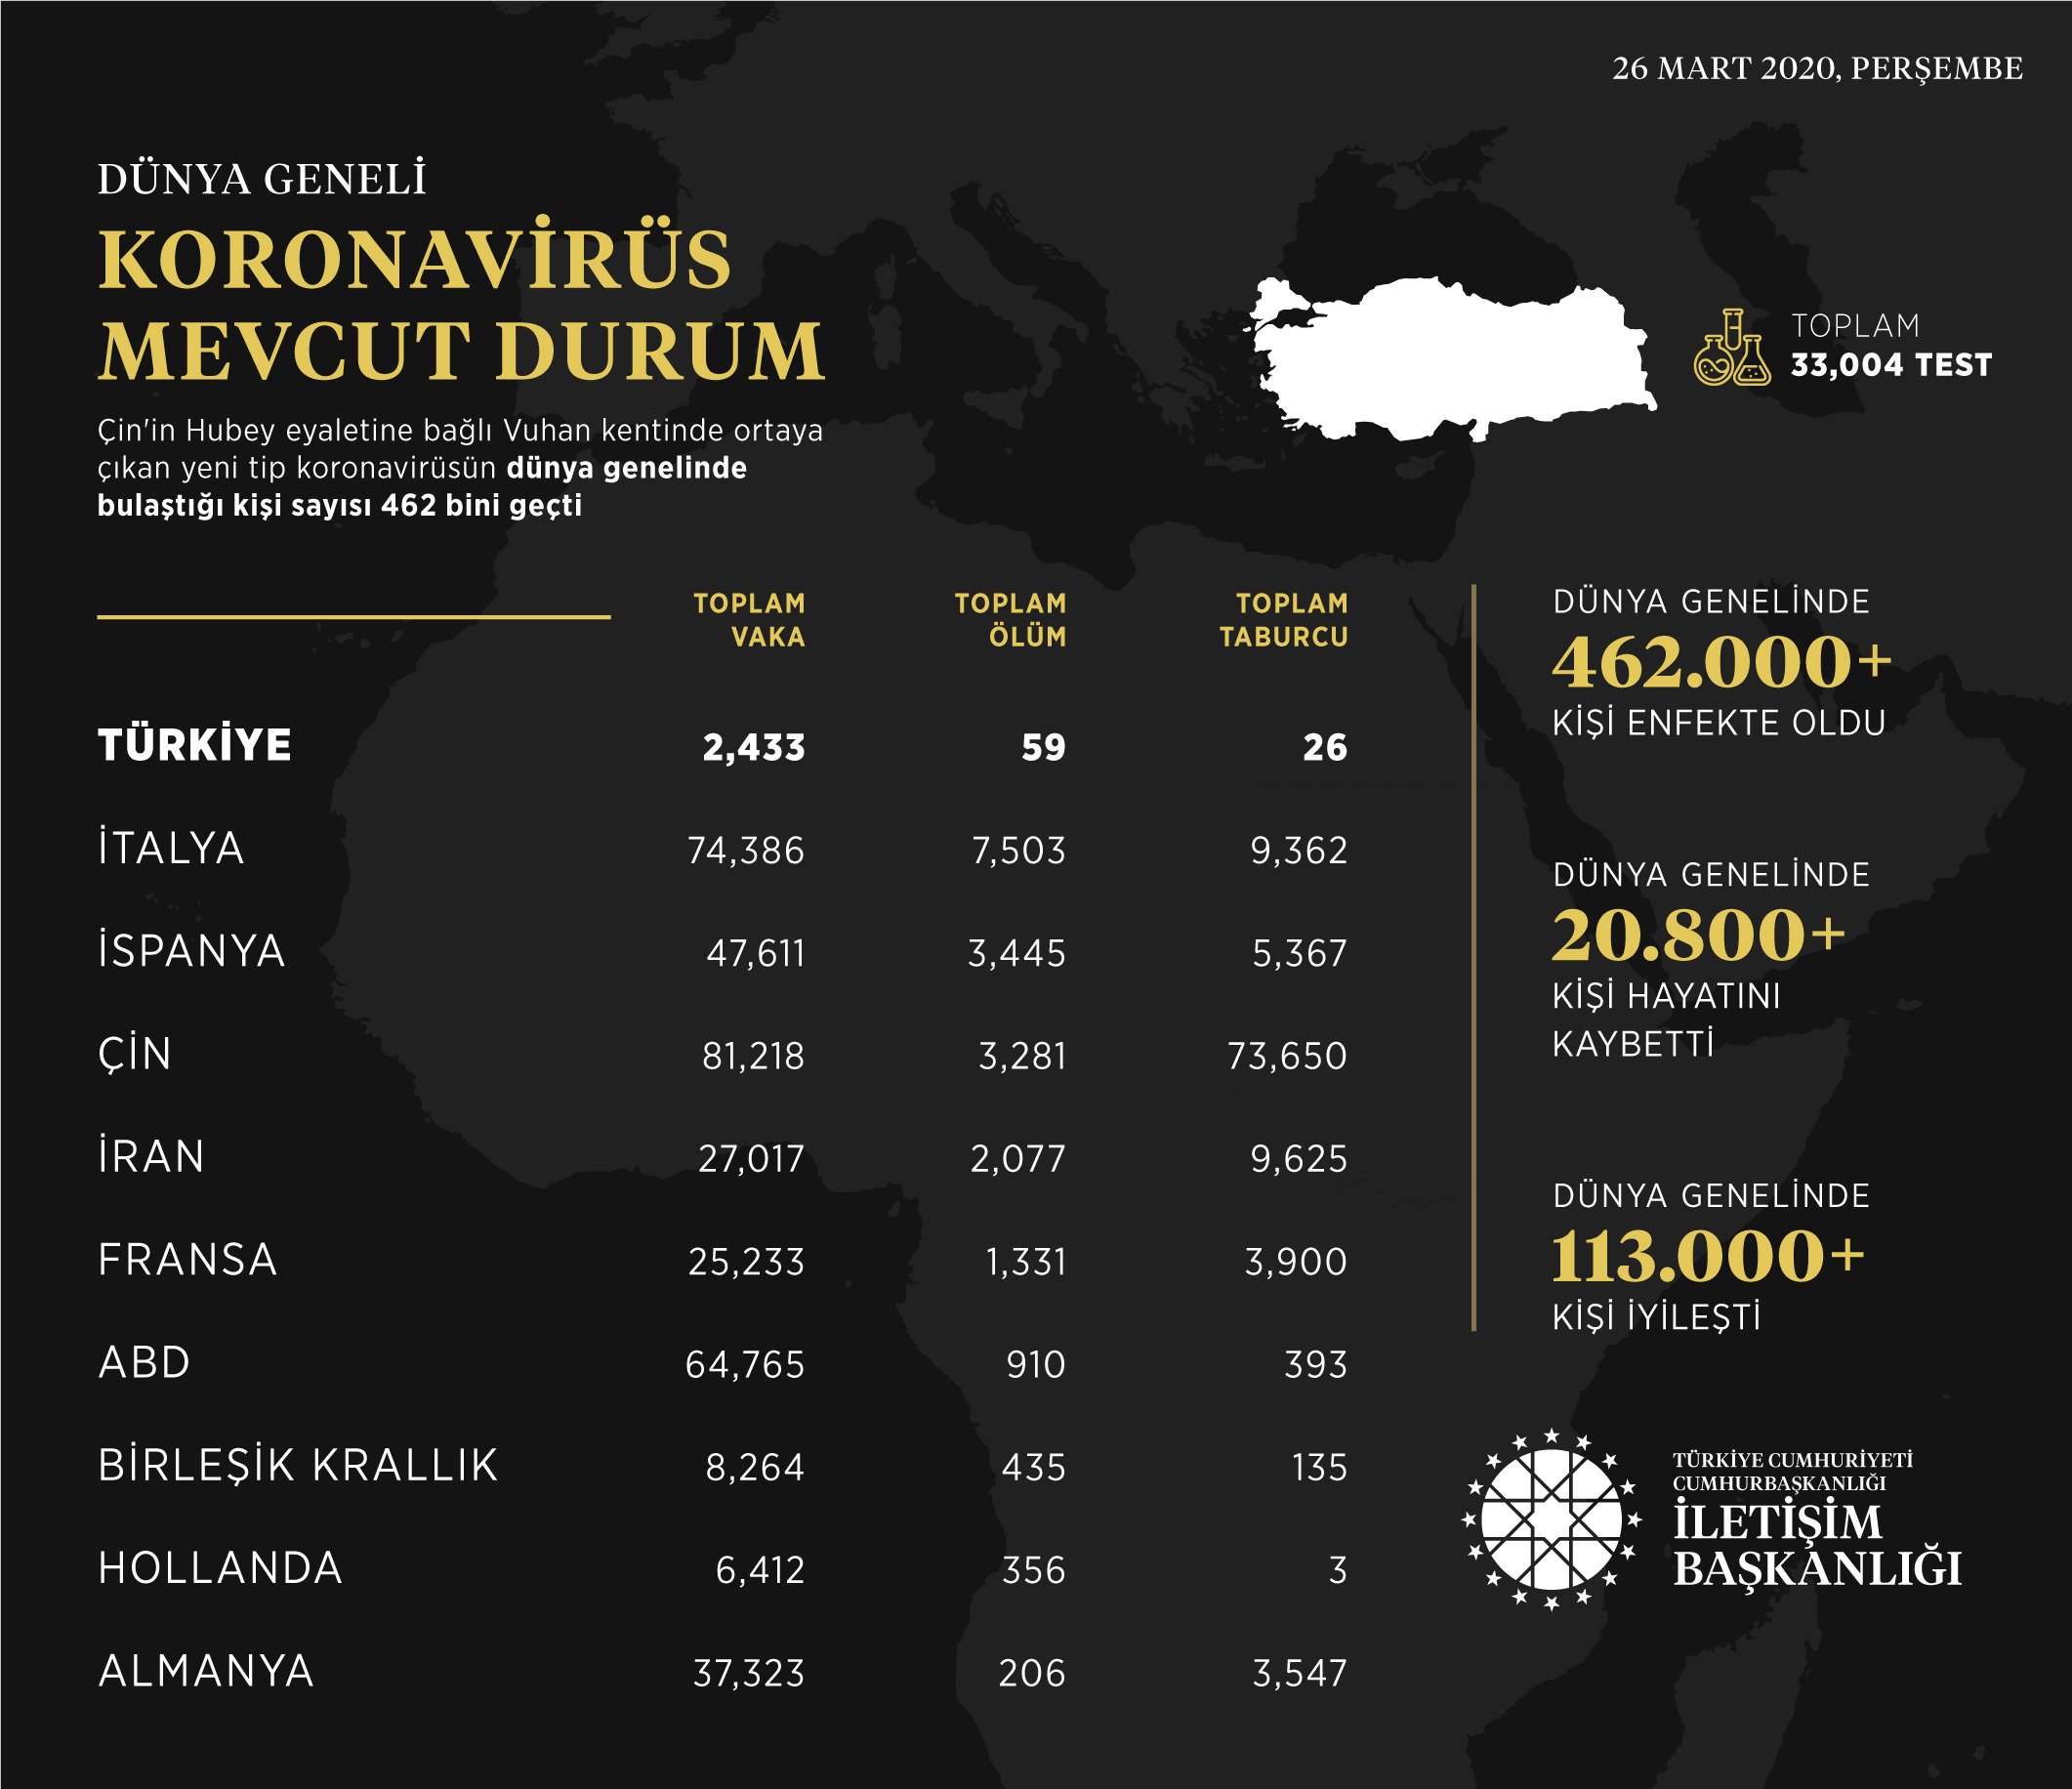 Koronavirüs Türkiye'de son vaka sayısı grafikli anlatım